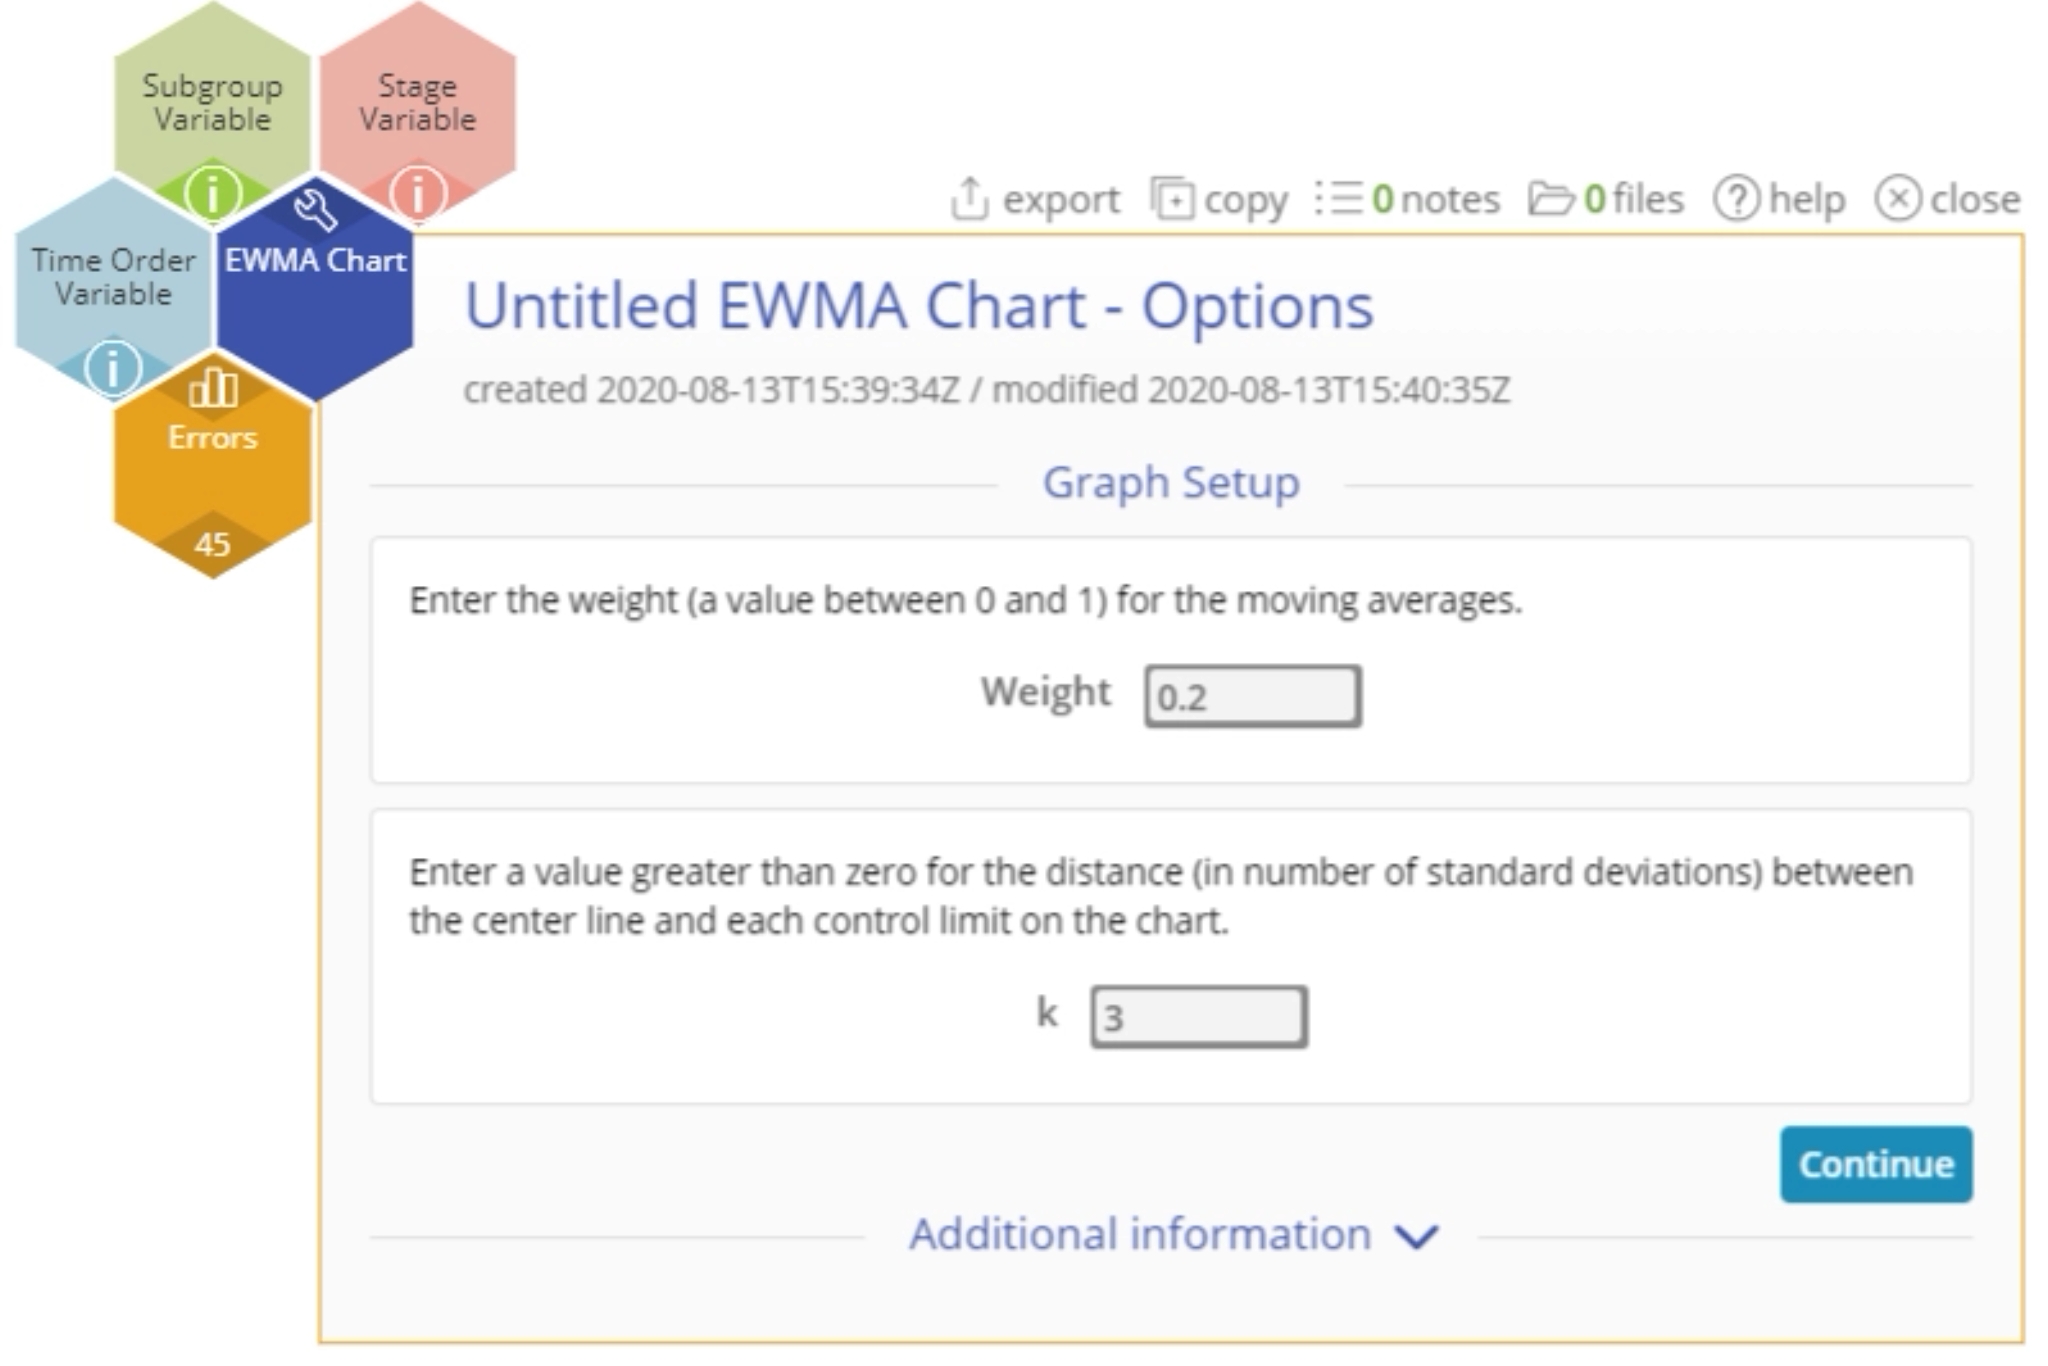 Options for EWMA Chart